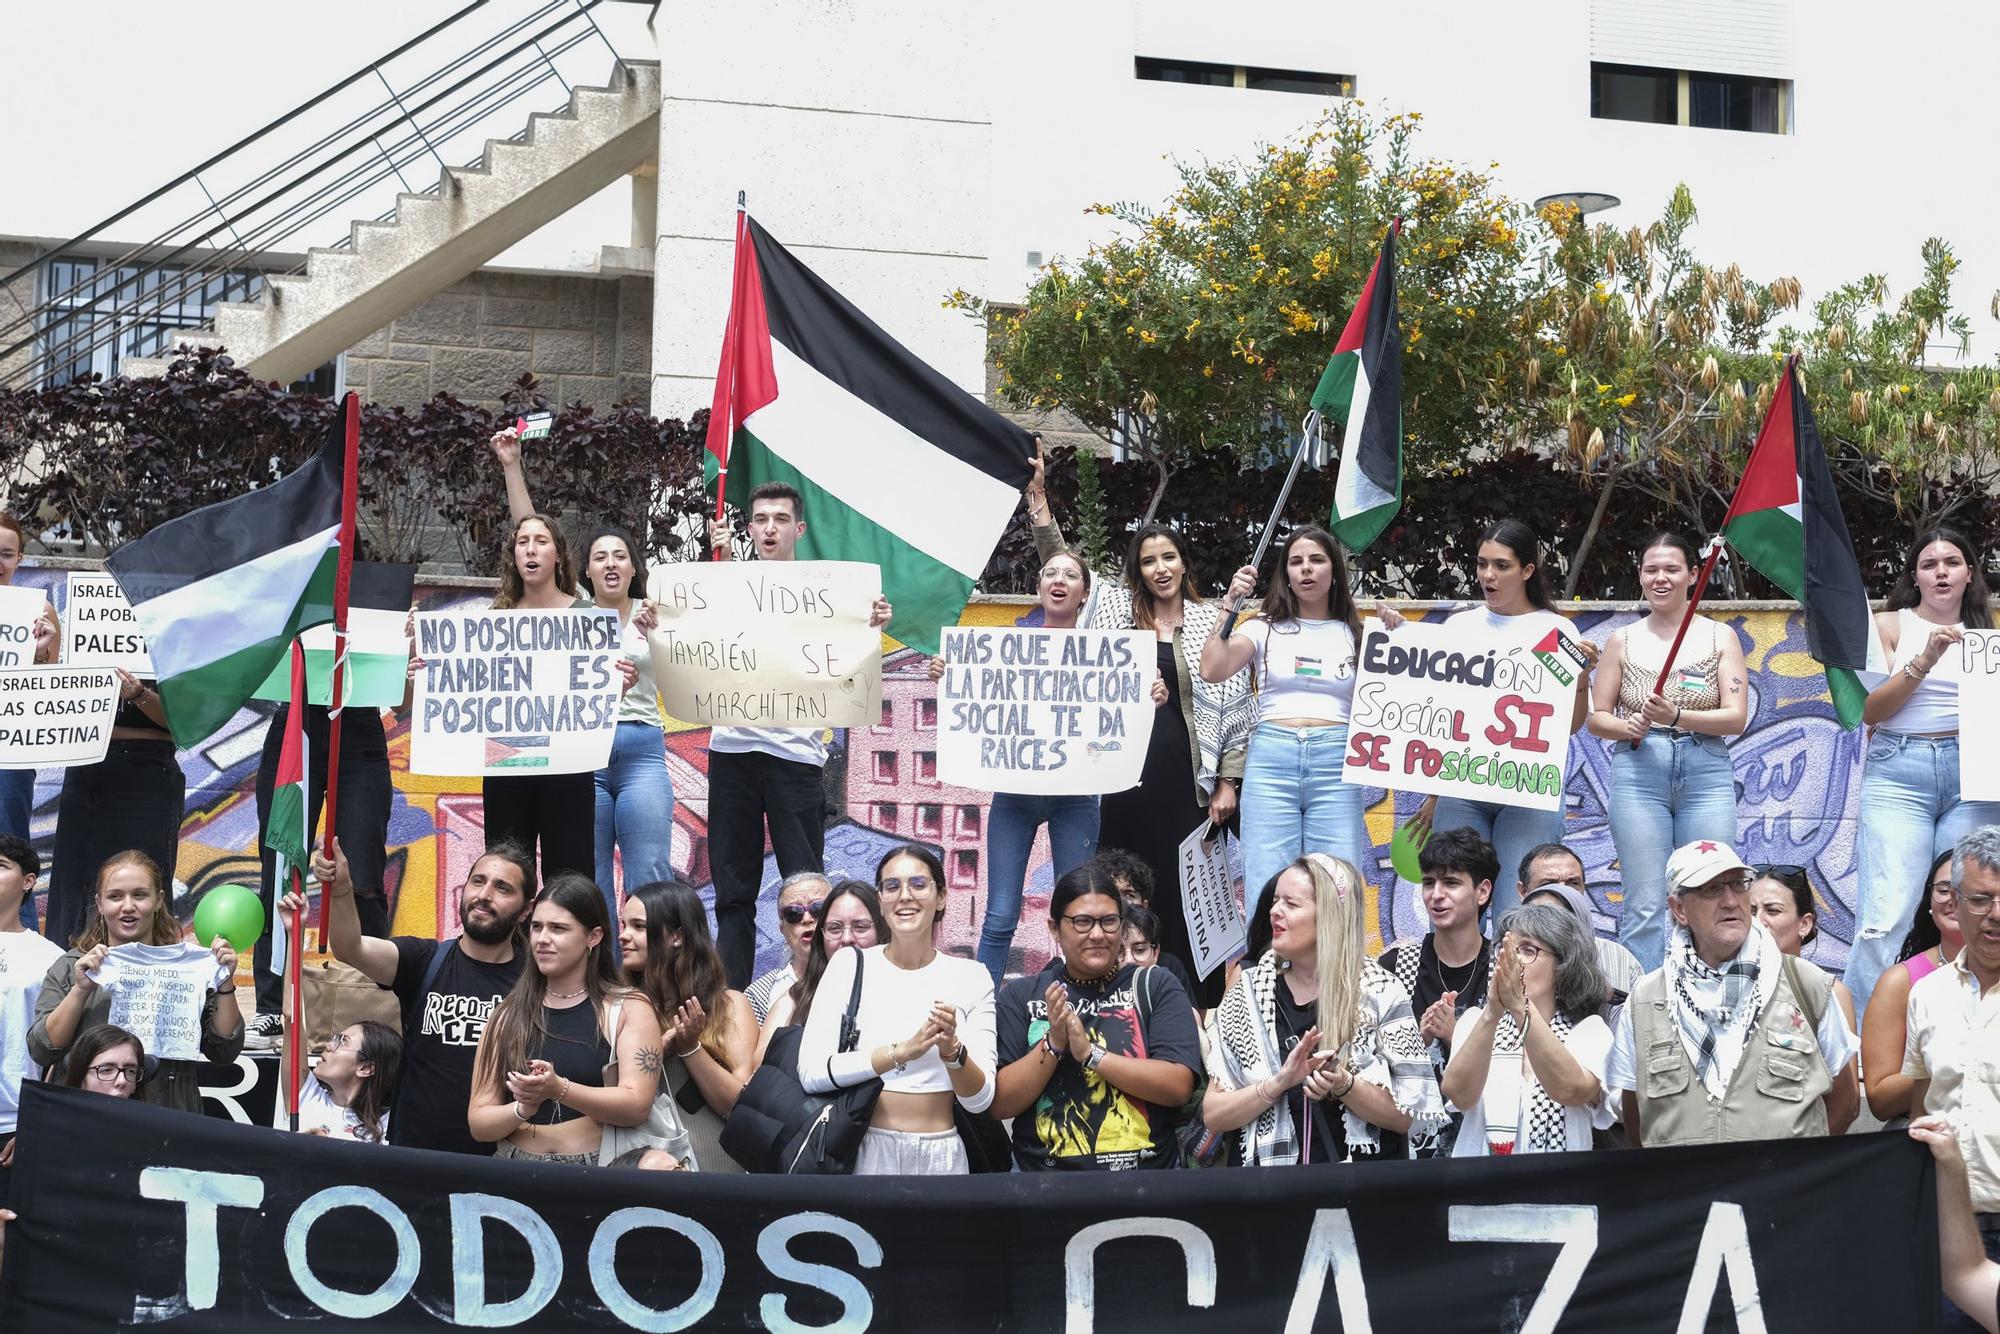 Protesta a favor de Palestina en la Facultad de Humanidades de la ULPGC